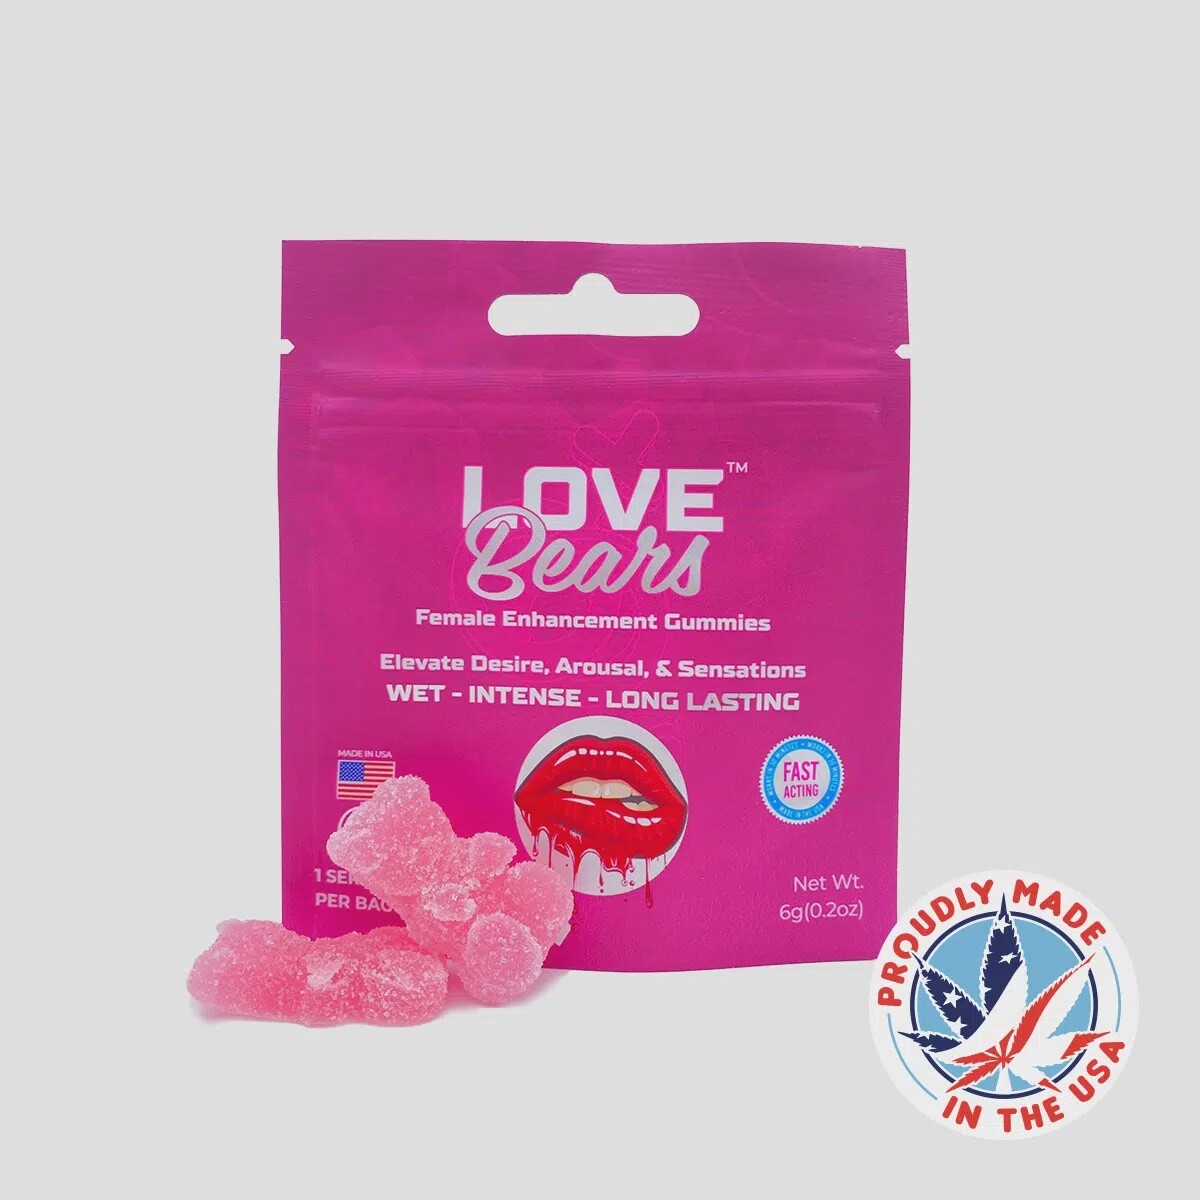 Love Bears Female Enhancement Gummies